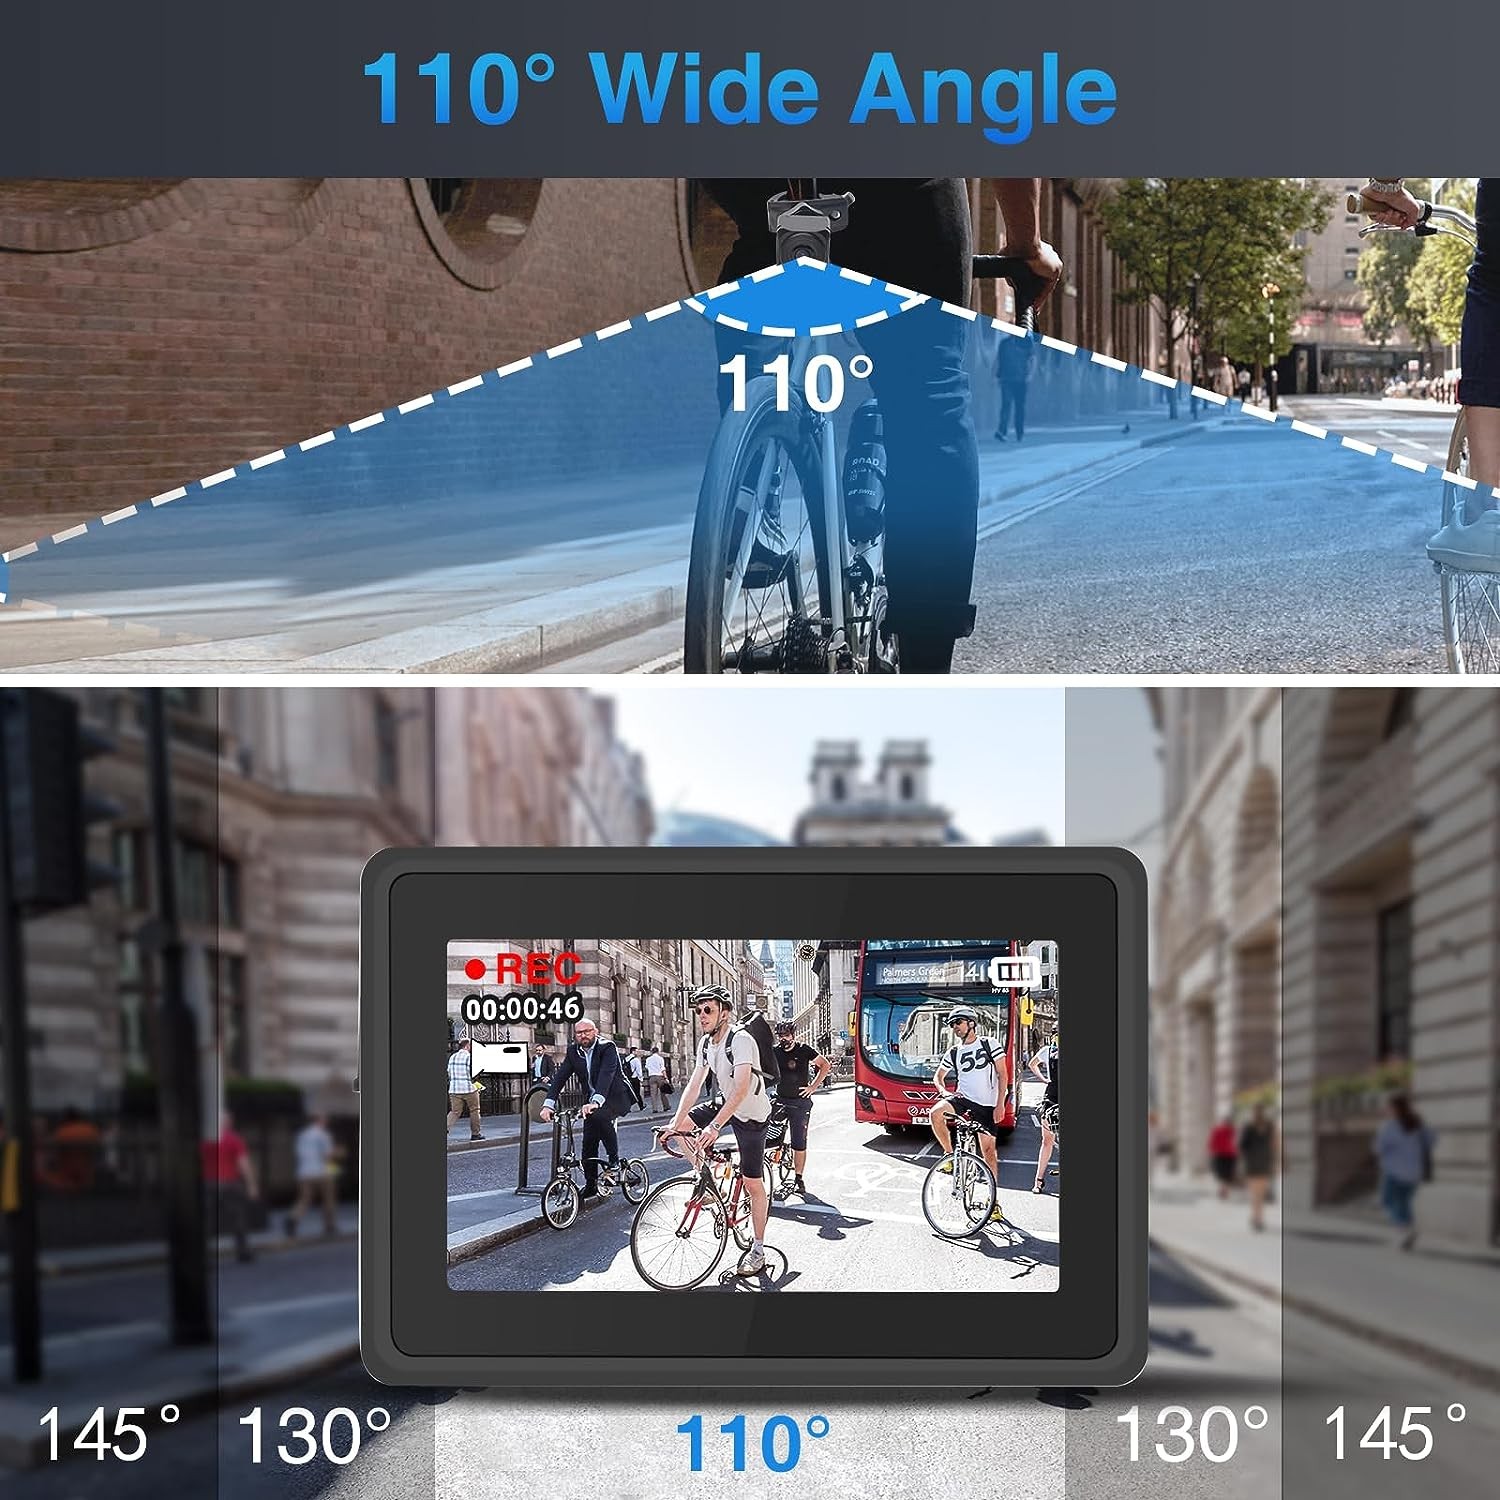 bicycle camera viewing angle 110 degrees + monitor